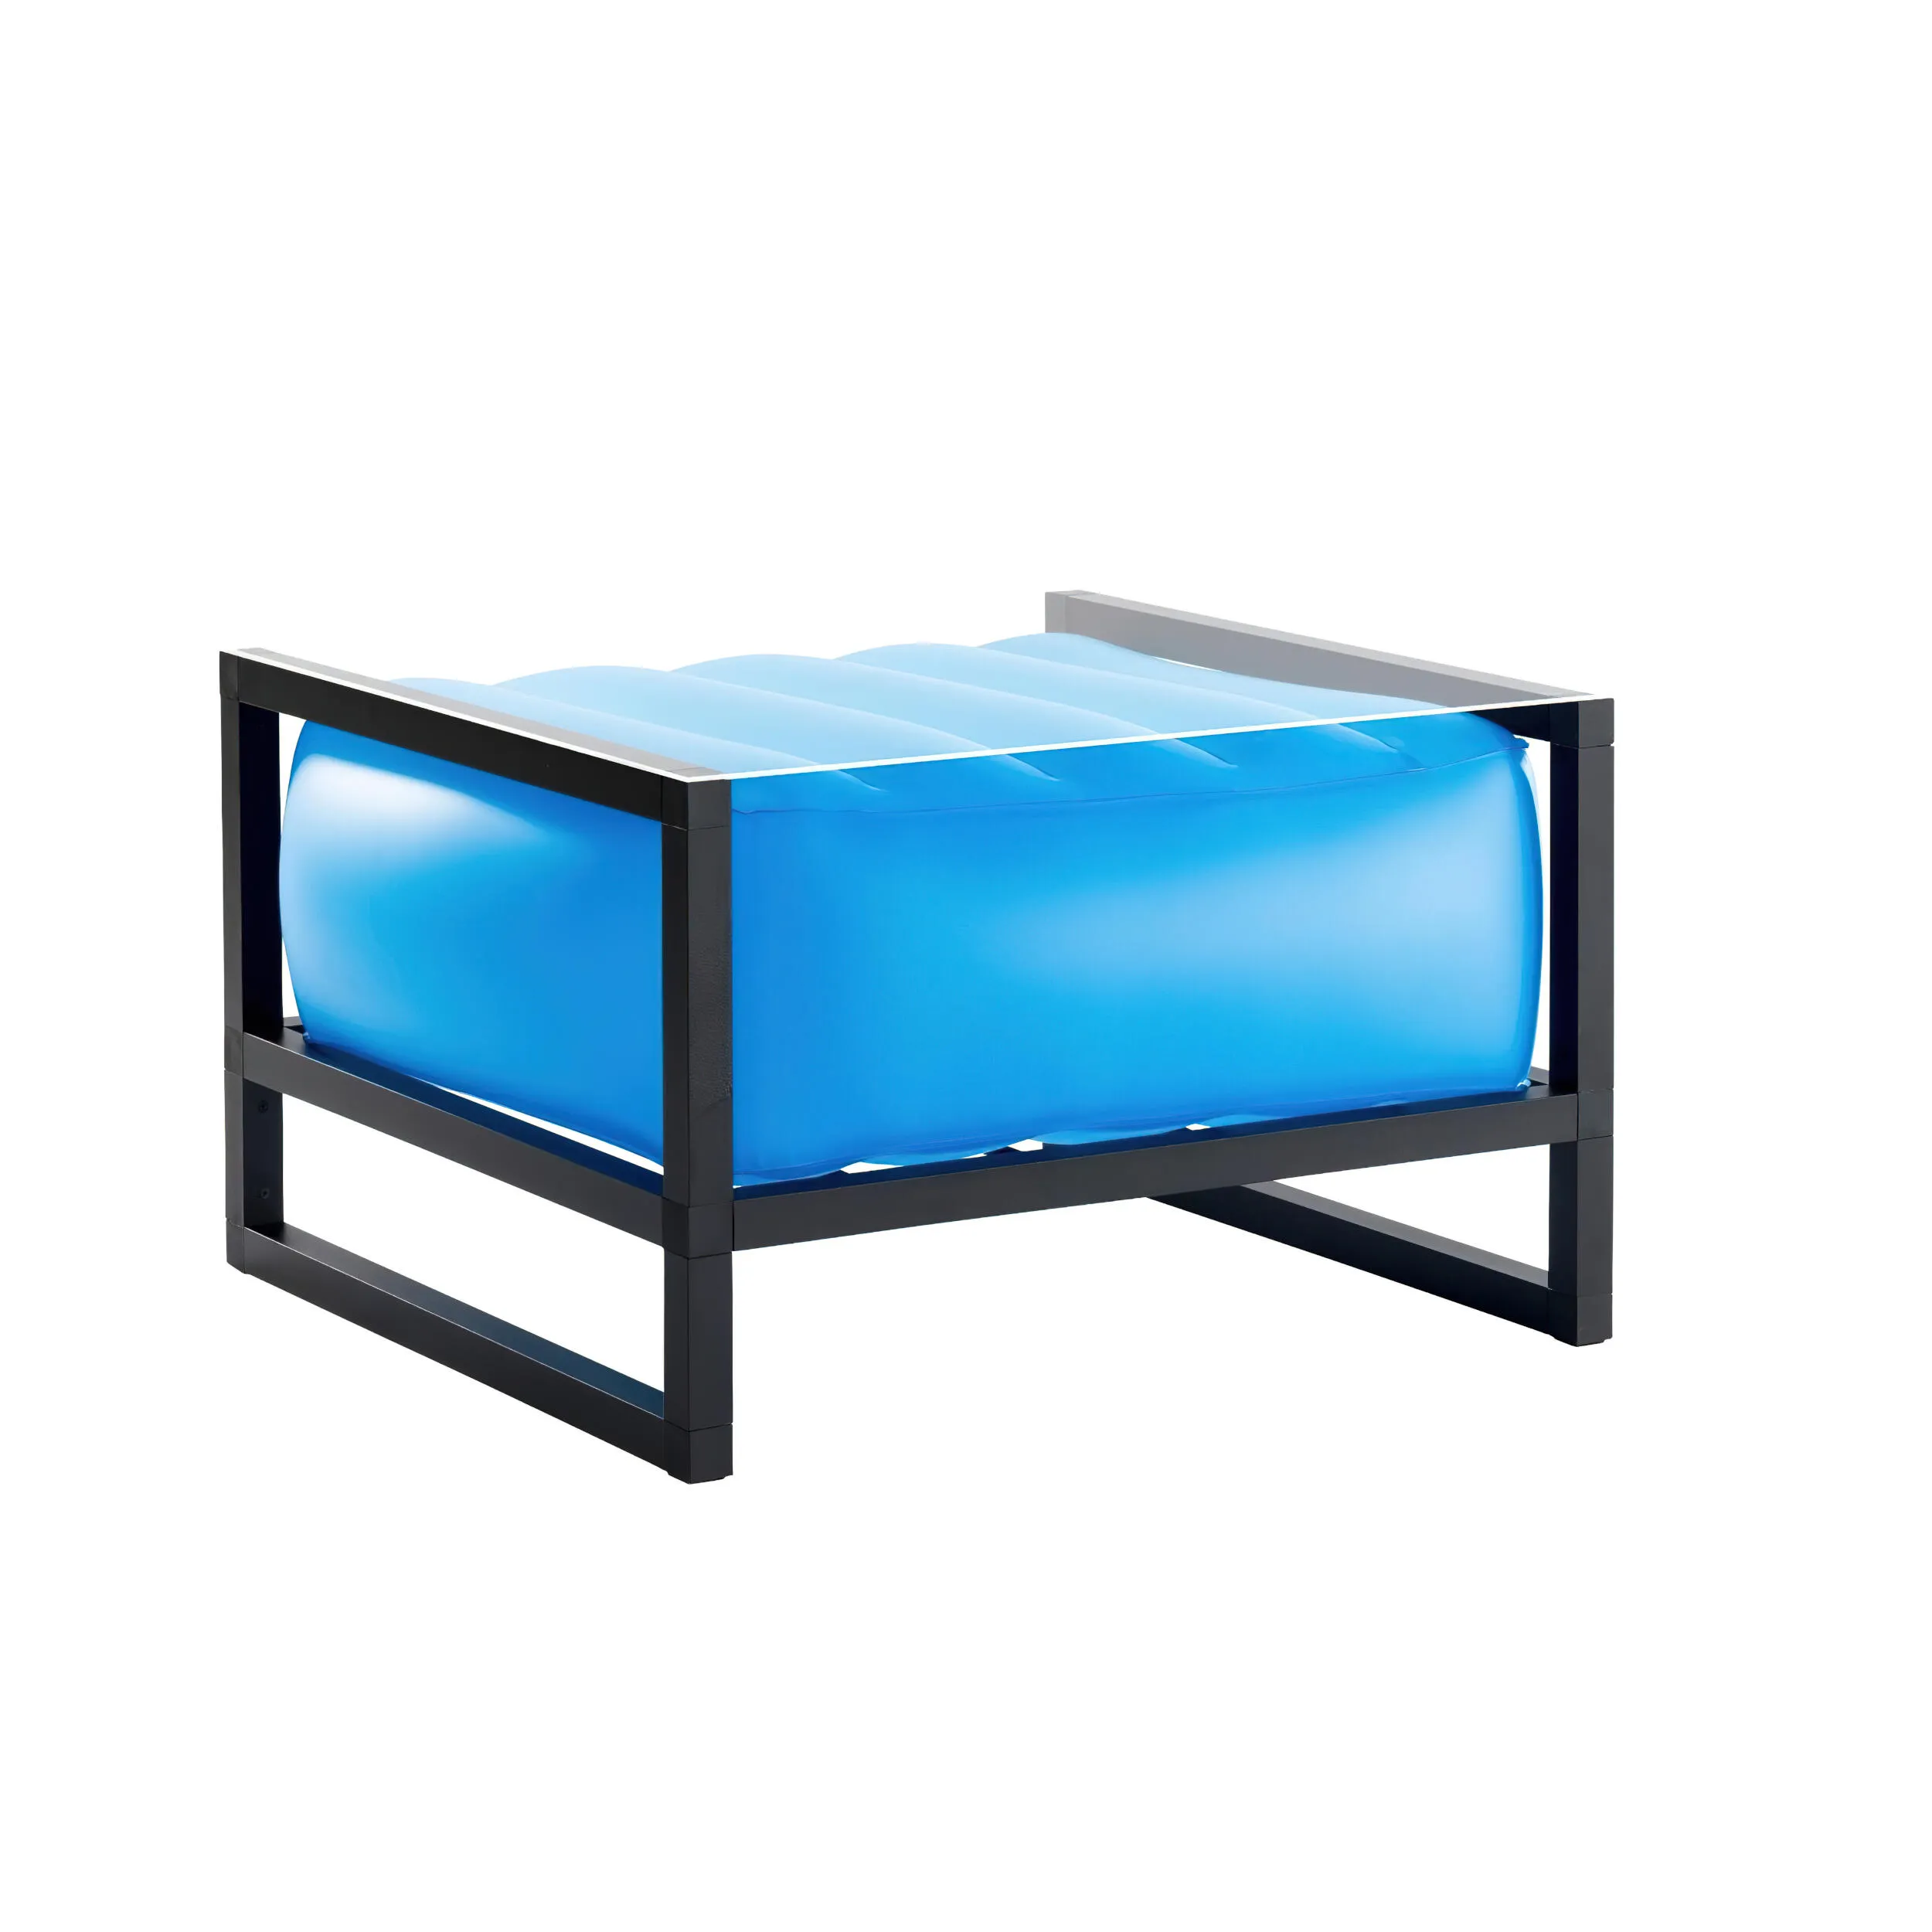 tavolino da salotto Yomi eko illuminato struttura in legno naturale, dimensioni 62x70xH40 cm peso 14 kg, seduta gonfiabile in TPU colore blu traslucido